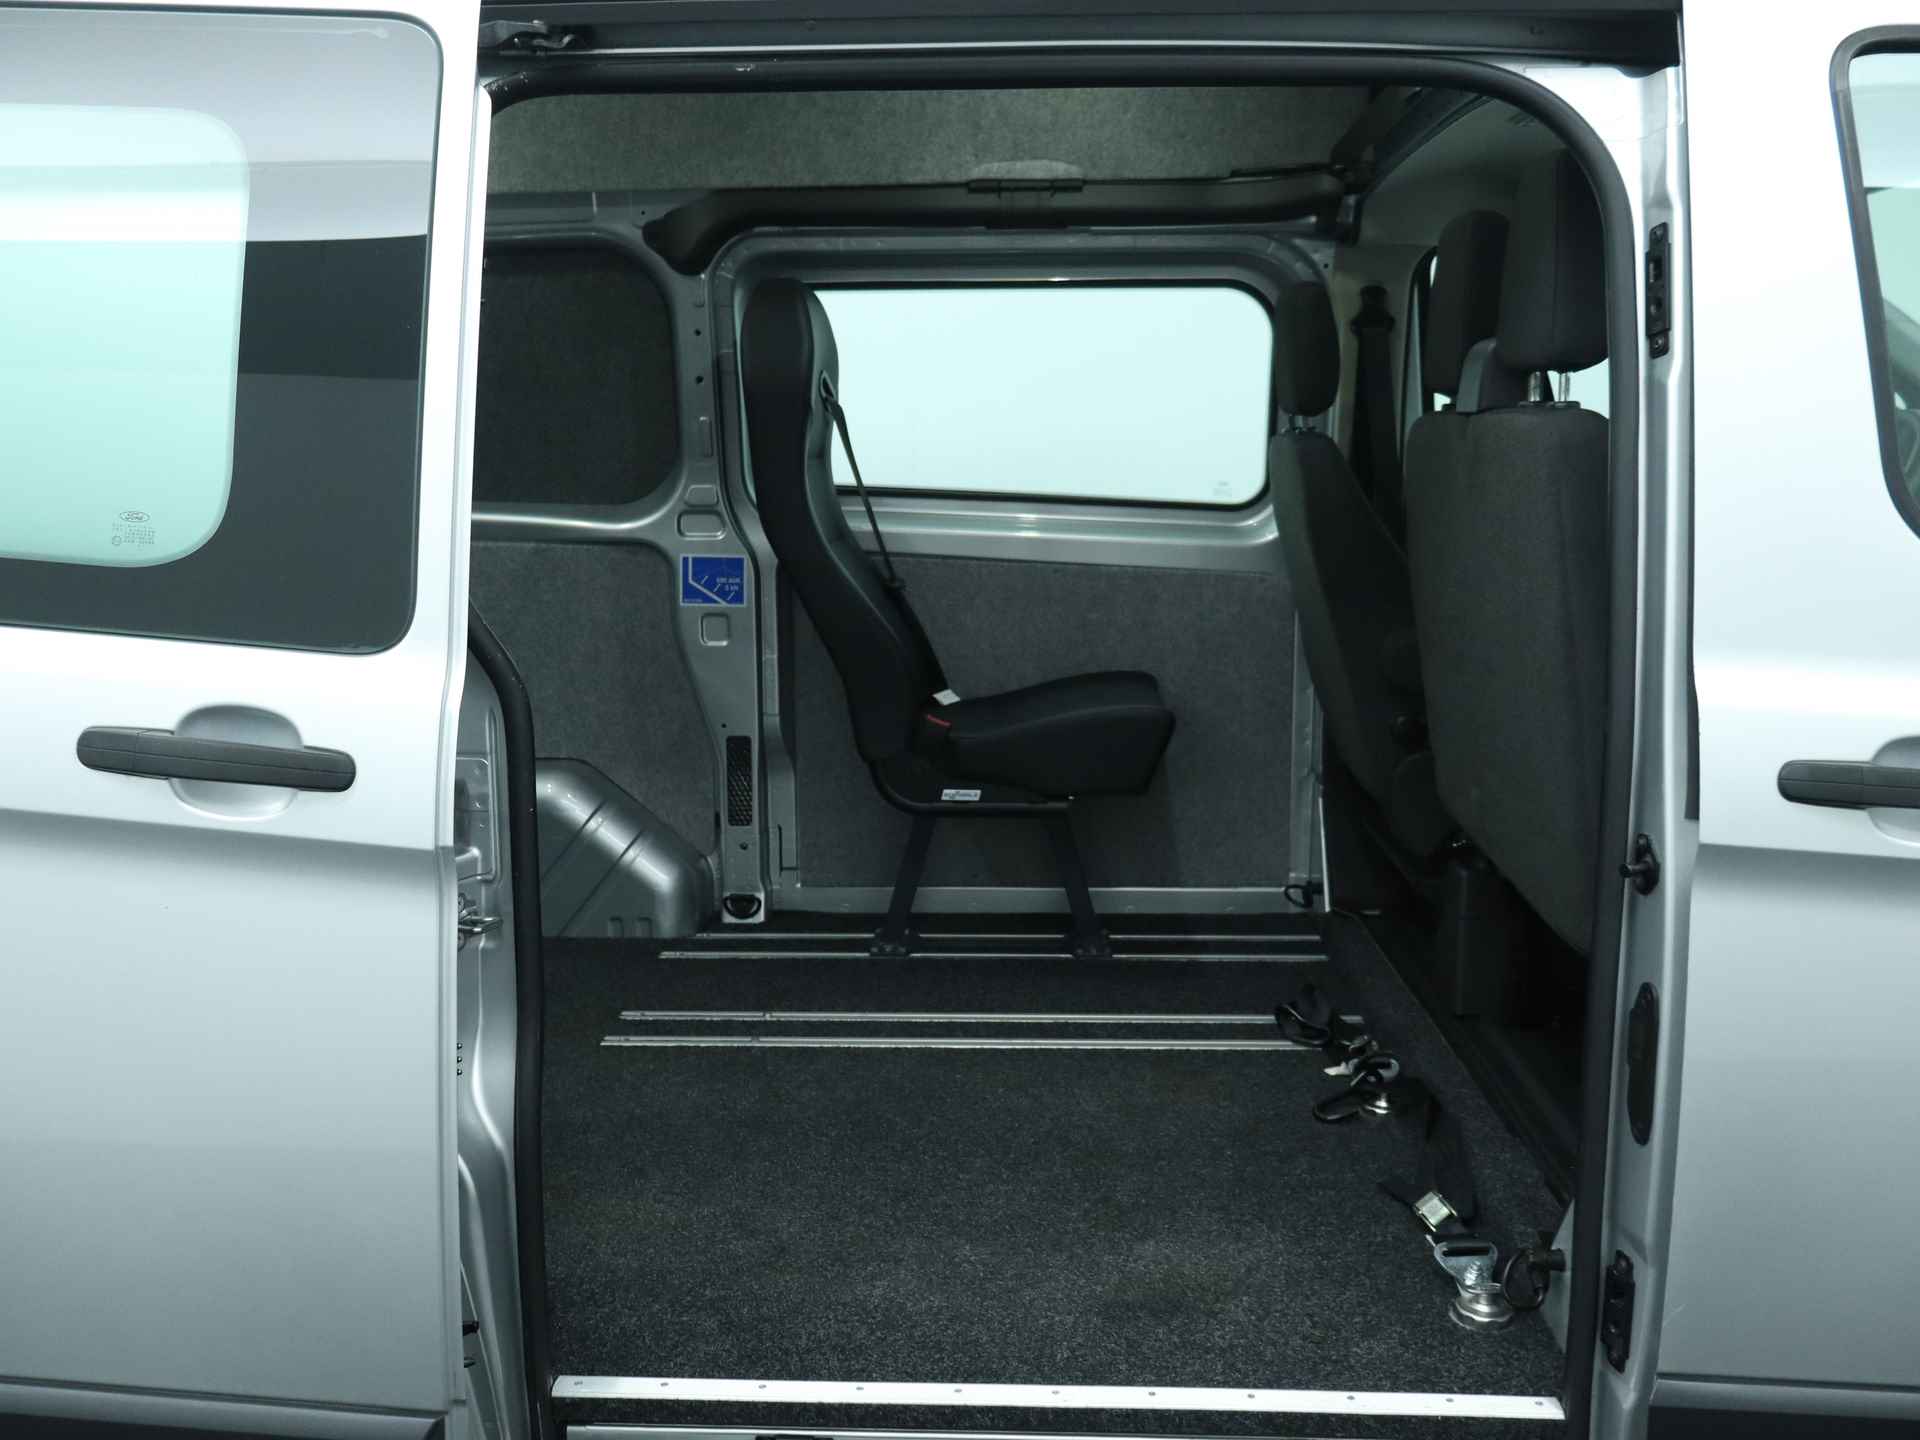 Ford Transit Custom 270 2.2 TDCI L1H2 Trend Lift geschikt voor scootmobiel rolstoel - 6/28